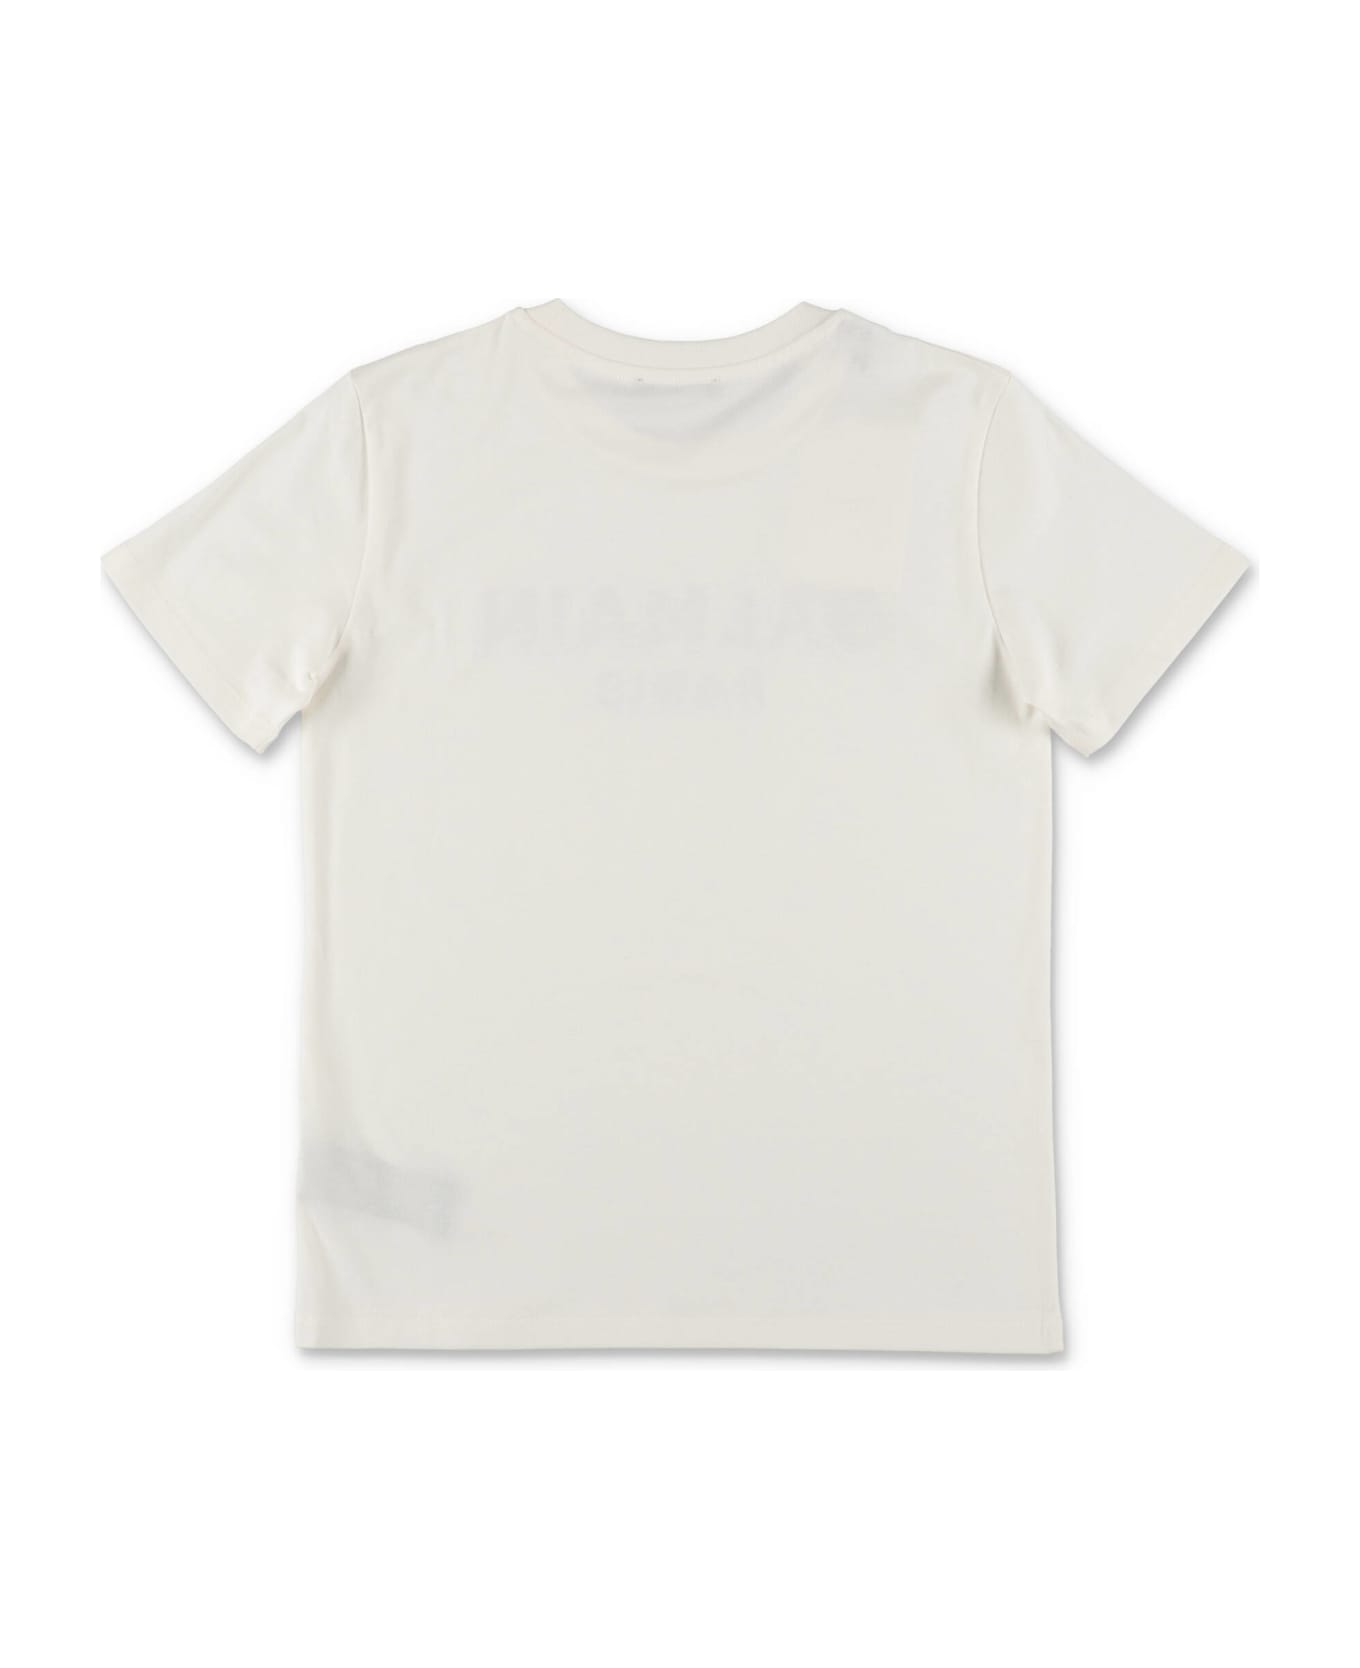 Balmain T-shirt Bianca In Jersey Di Cotone Bambino - Bianco Tシャツ＆ポロシャツ